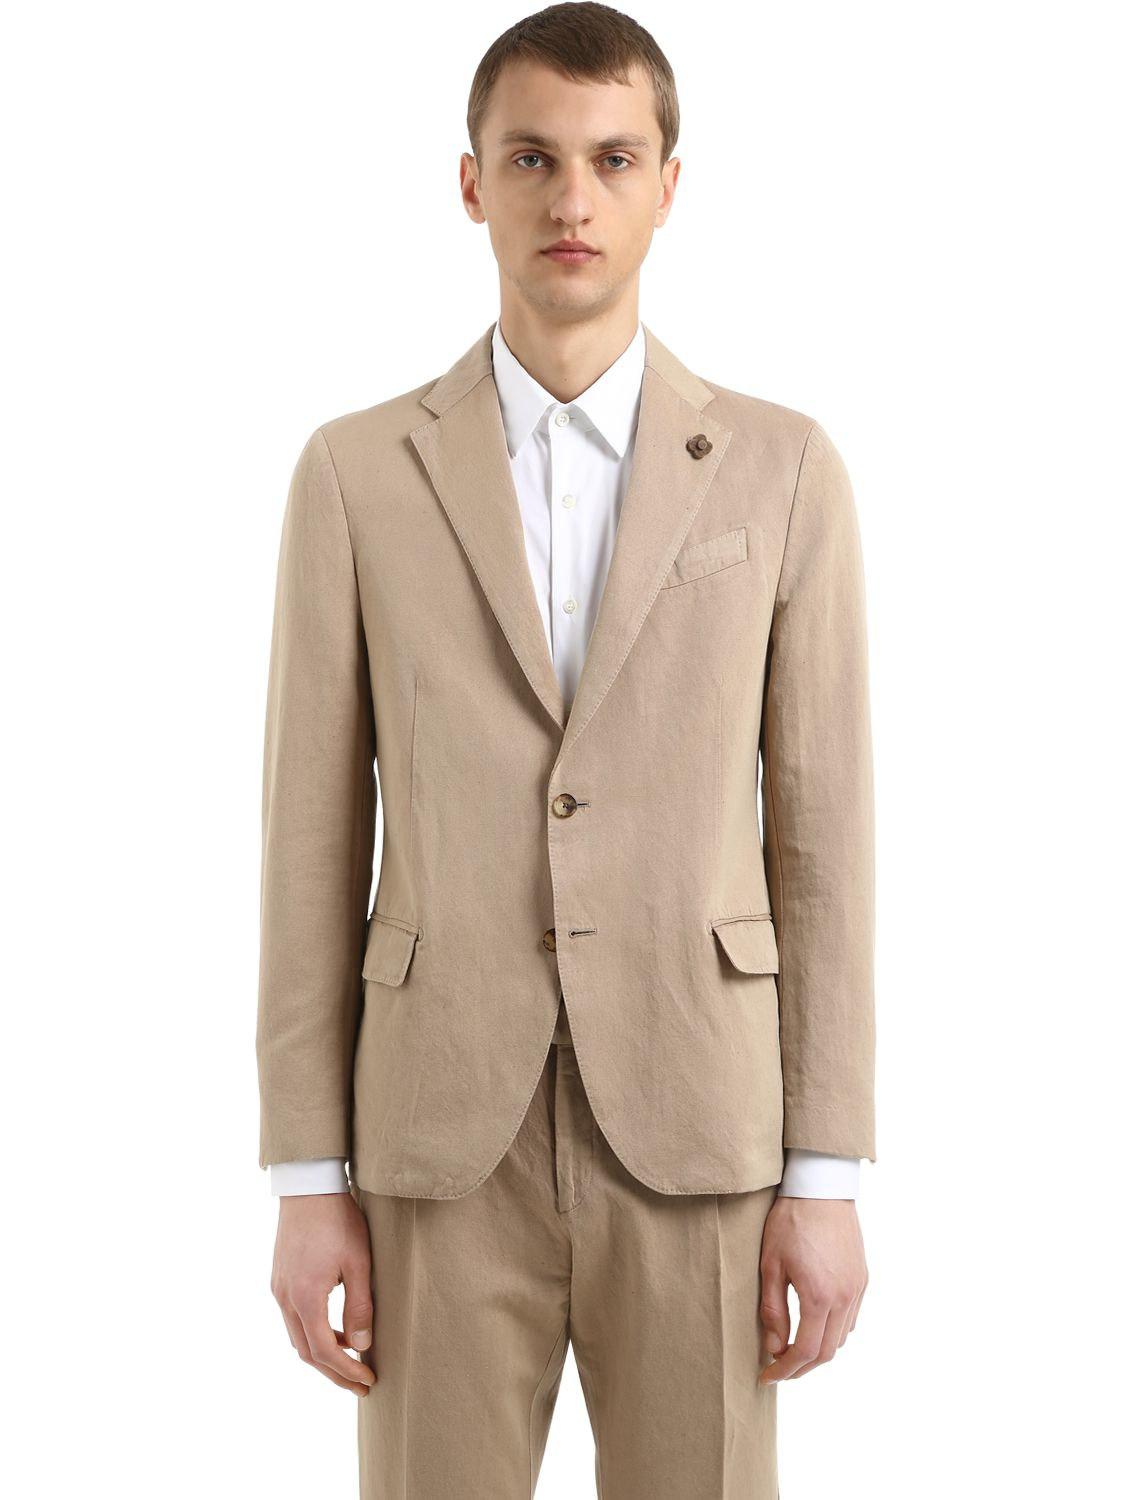 Lyst - Lardini Linen & Cotton Unlined Suit in Natural for Men